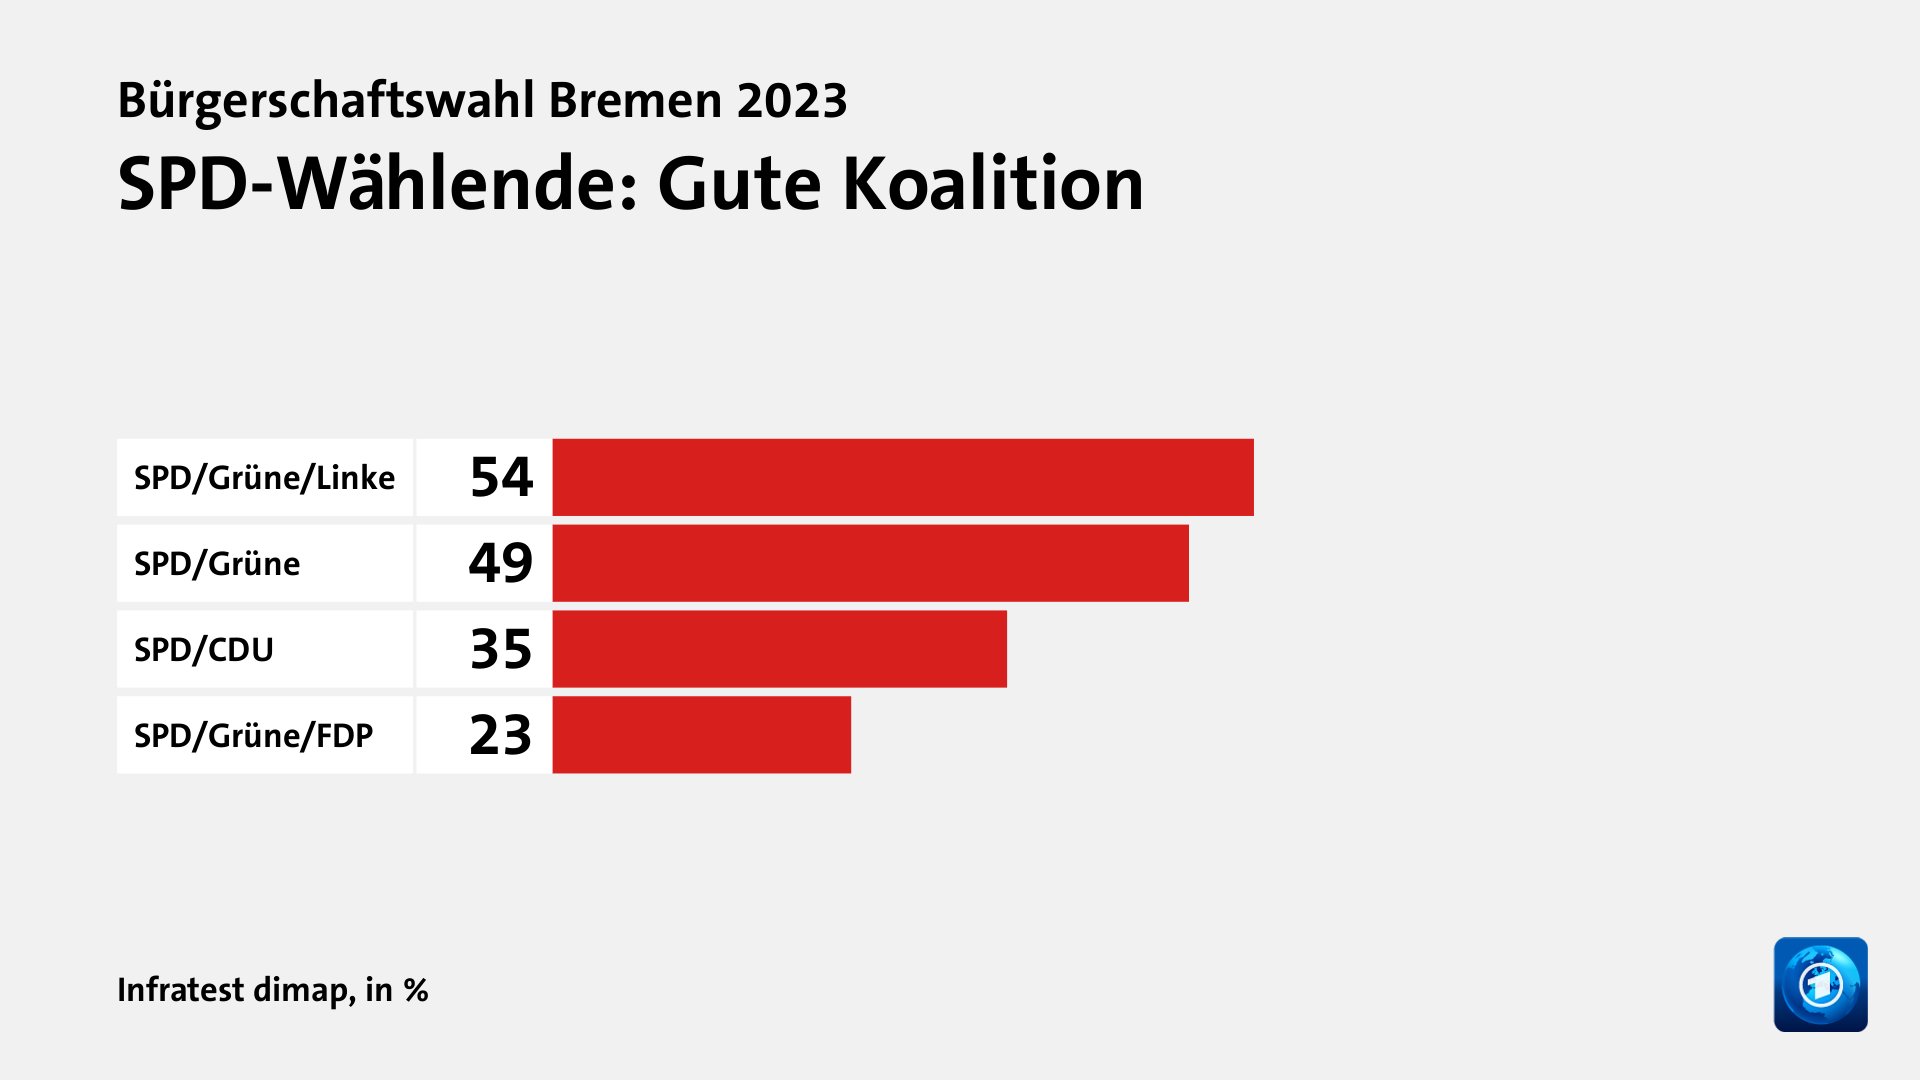 SPD-Wählende: Gute Koalition, in %: SPD/Grüne/Linke 54, SPD/Grüne 49, SPD/CDU 35, SPD/Grüne/FDP 23, Quelle: Infratest dimap